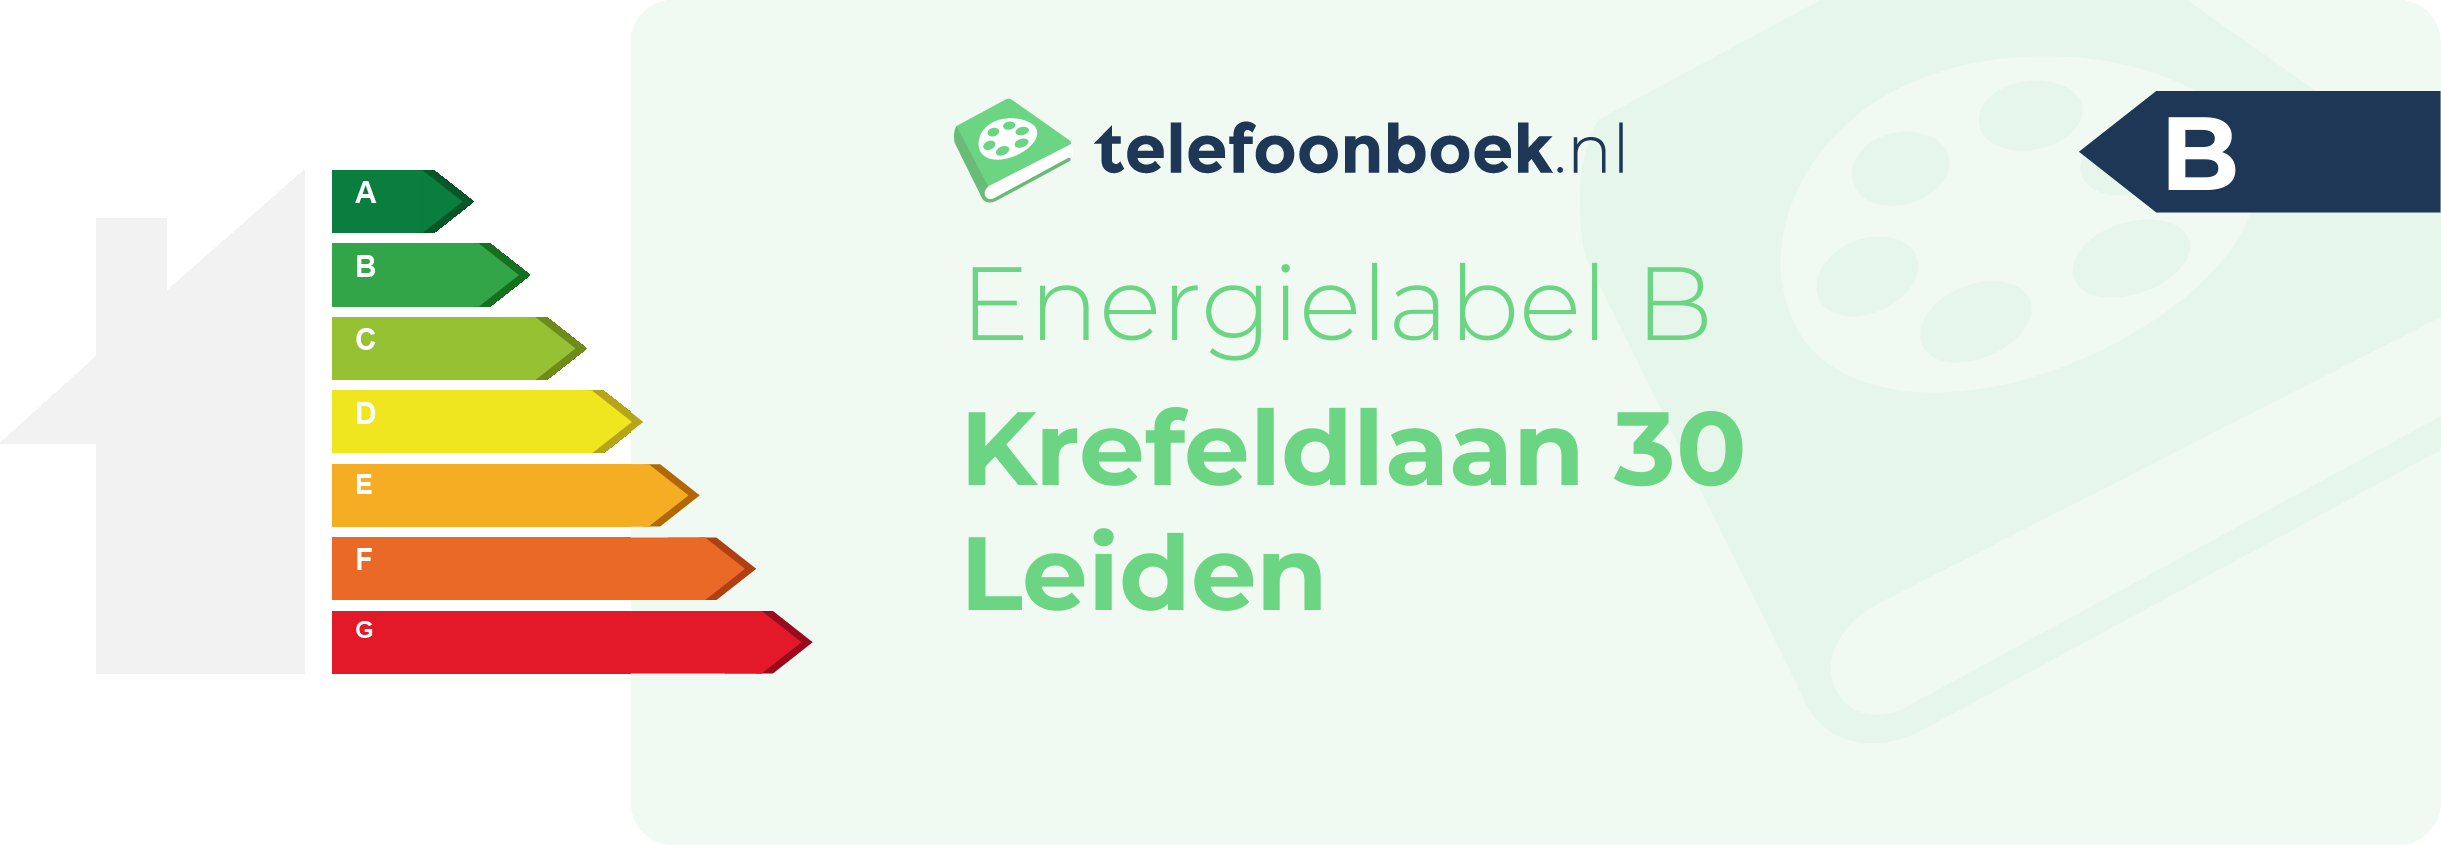 Energielabel Krefeldlaan 30 Leiden